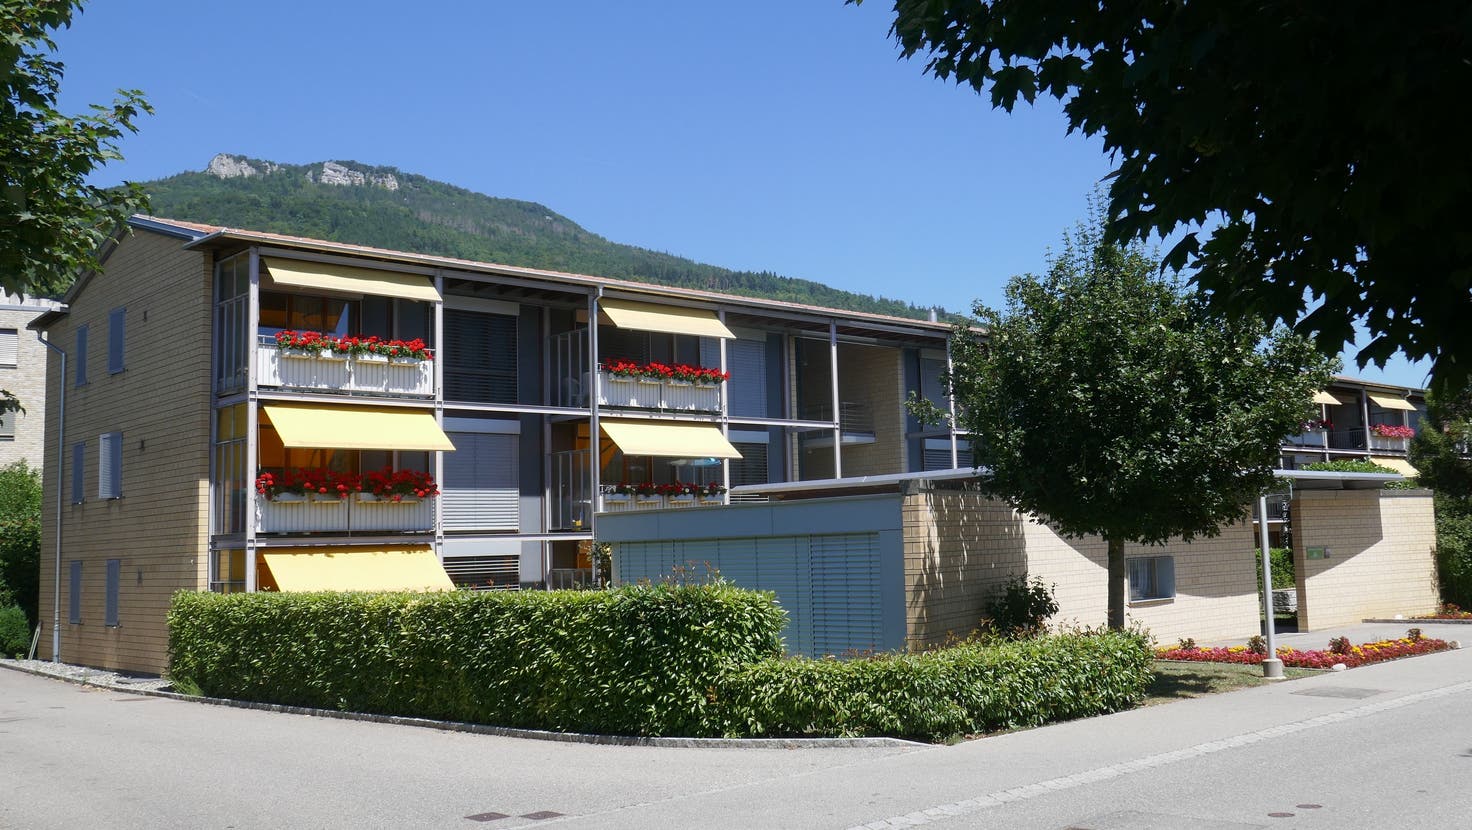 Alterswohnungen wie hier in Oensingen gibt es in der Hälfte der Solothurner Gemeinden keine. (Zvg)